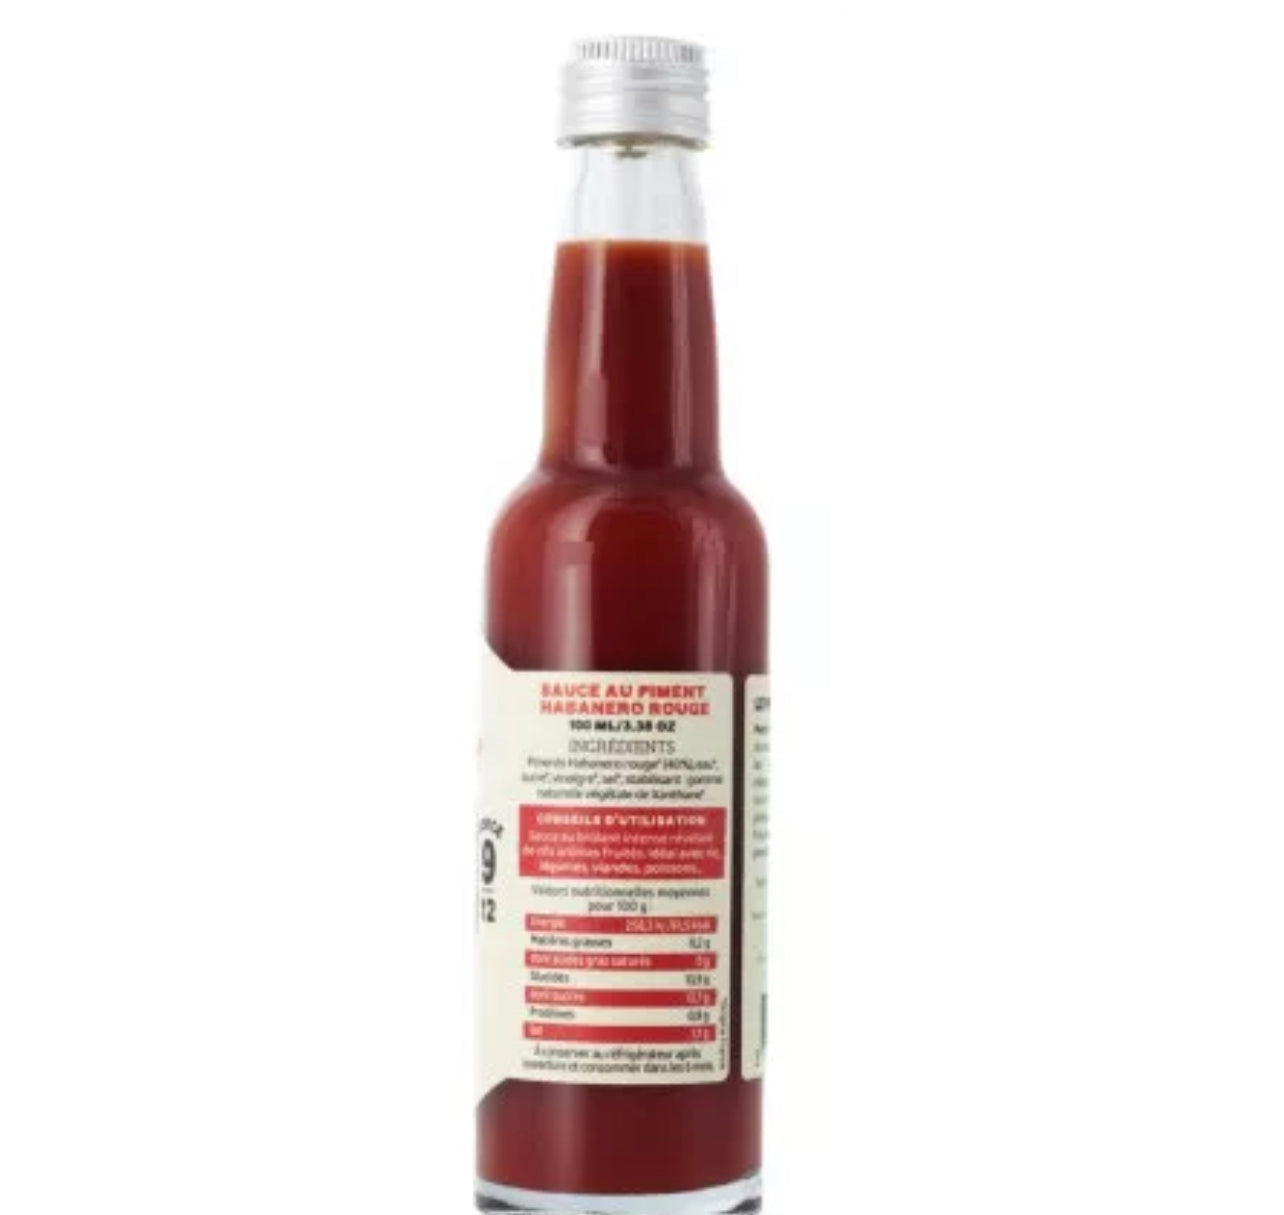 Sauce Piquante Foudre au pur piment Habanero | Force 9/12 - 100g